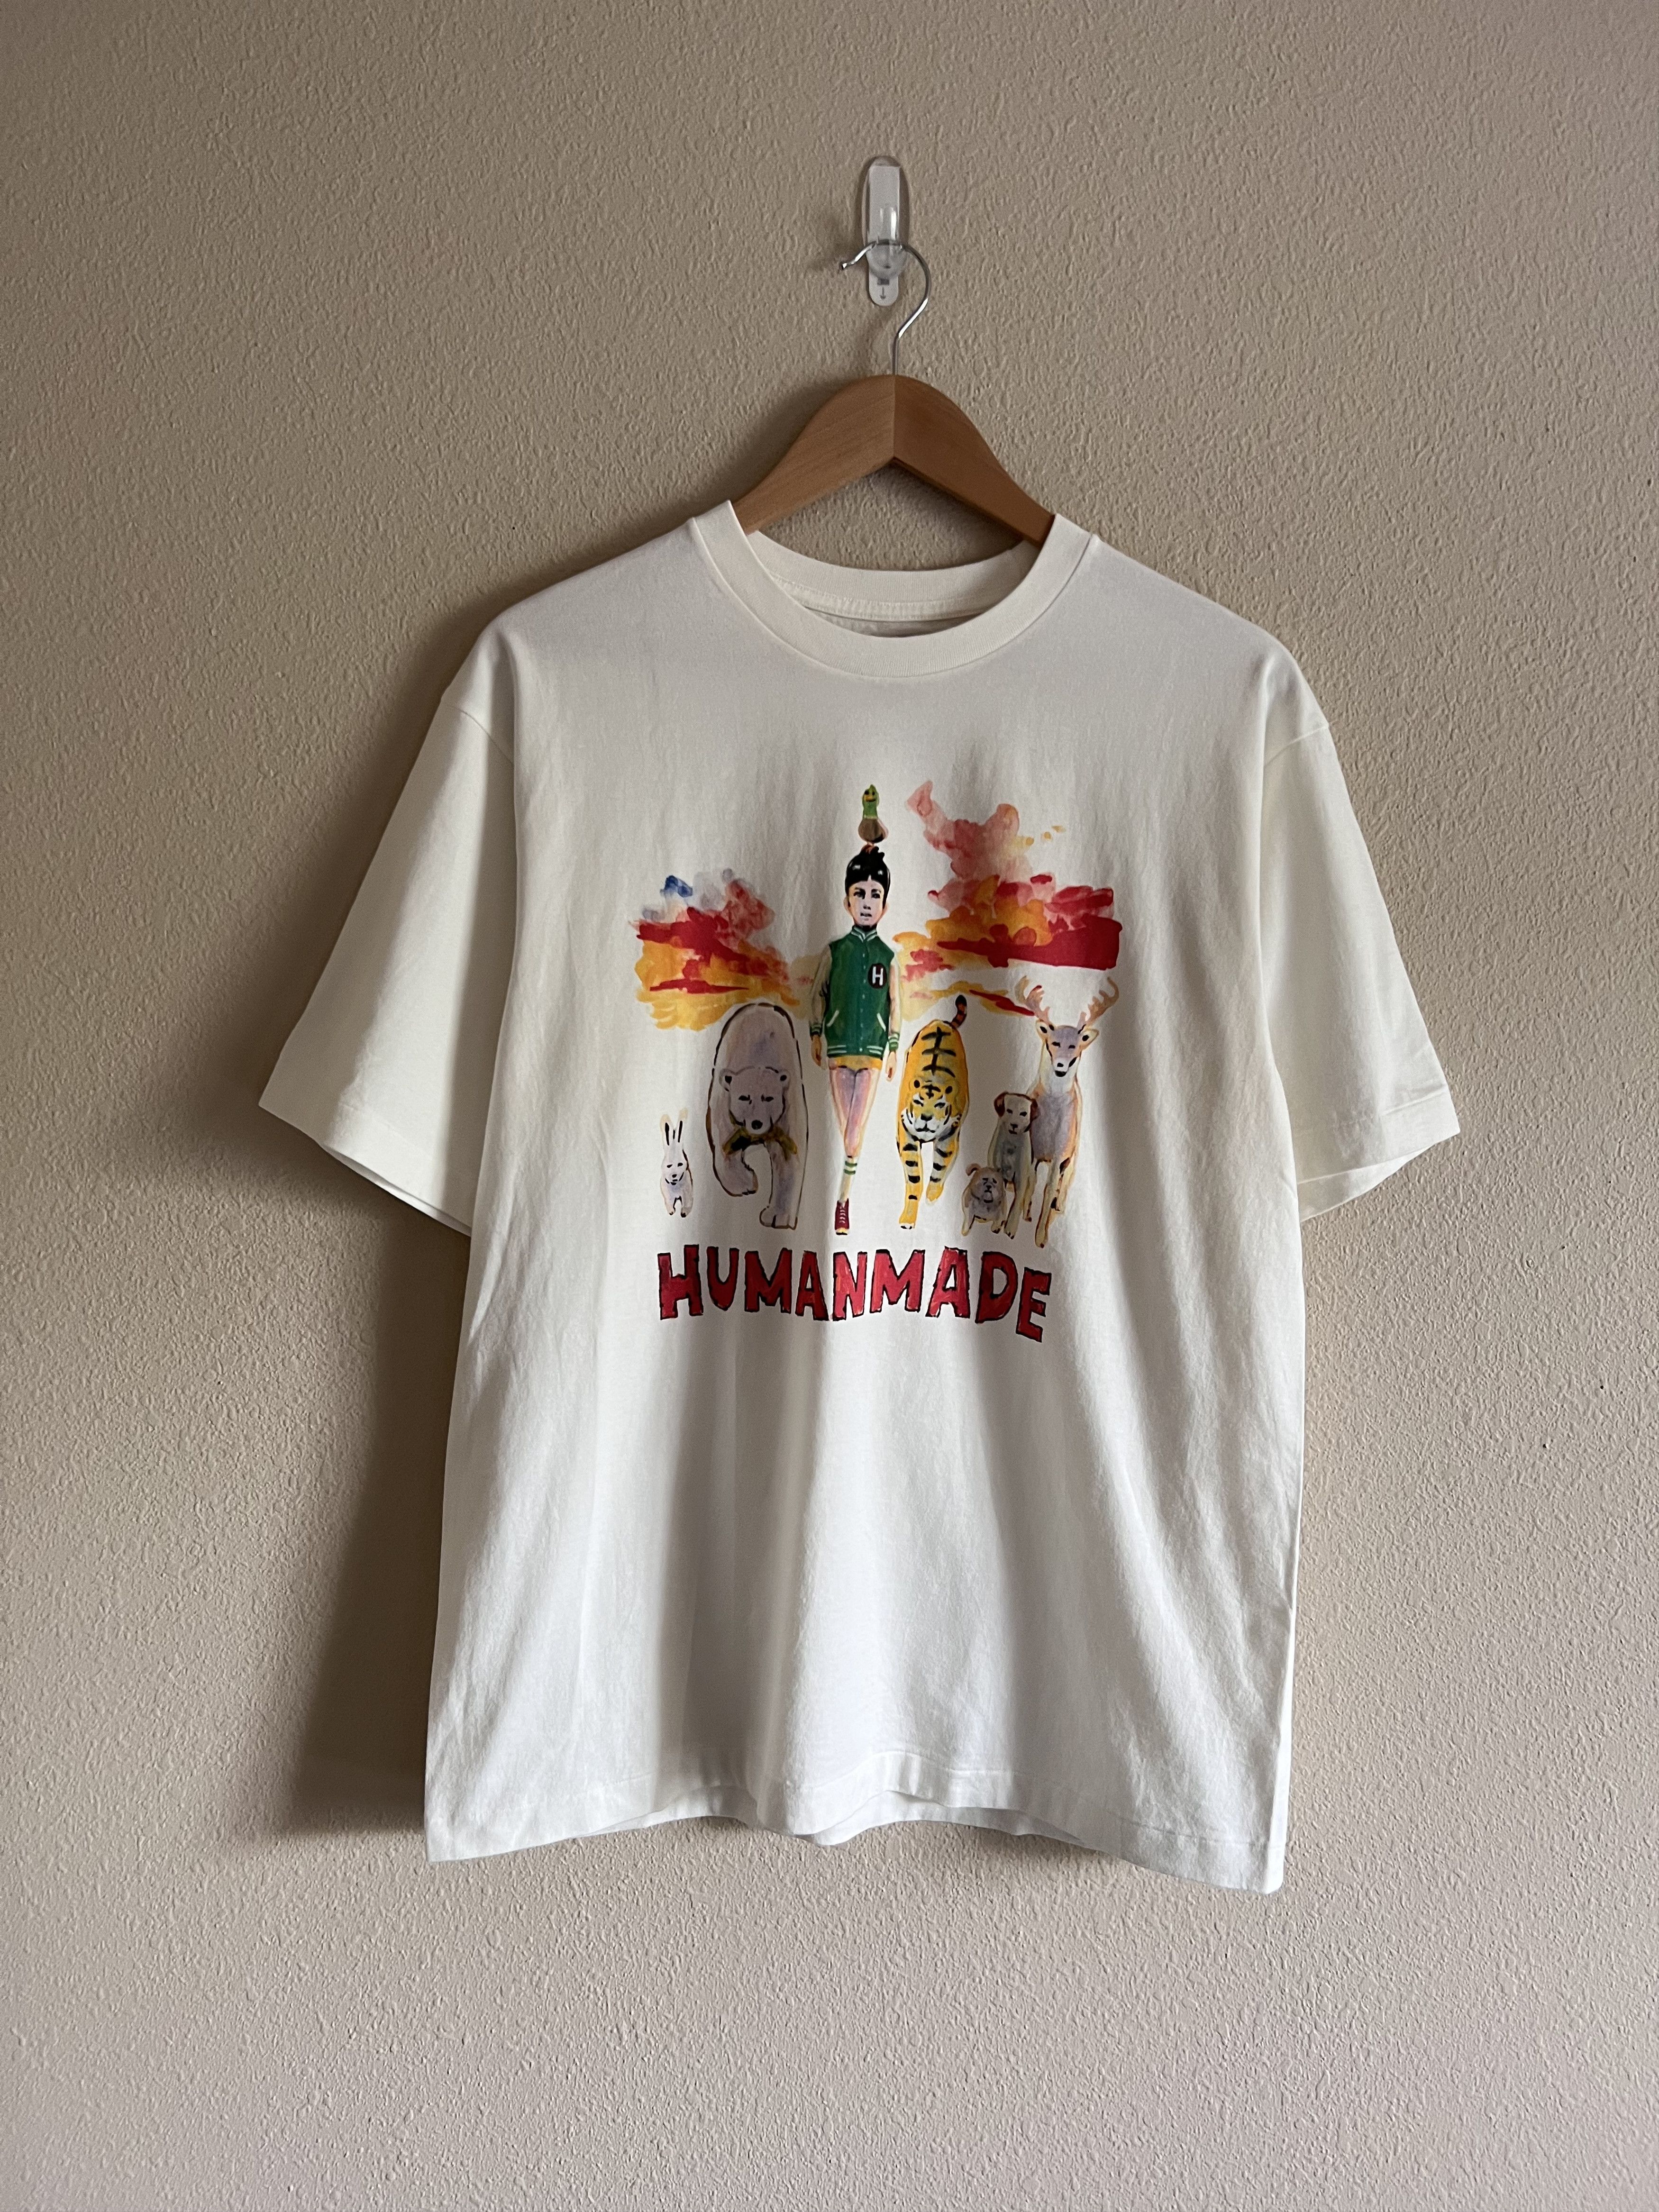 販売購入 HUMAN MADE KEIKO SOOTOME T-SHIRT #12 Tシャツ/カットソー